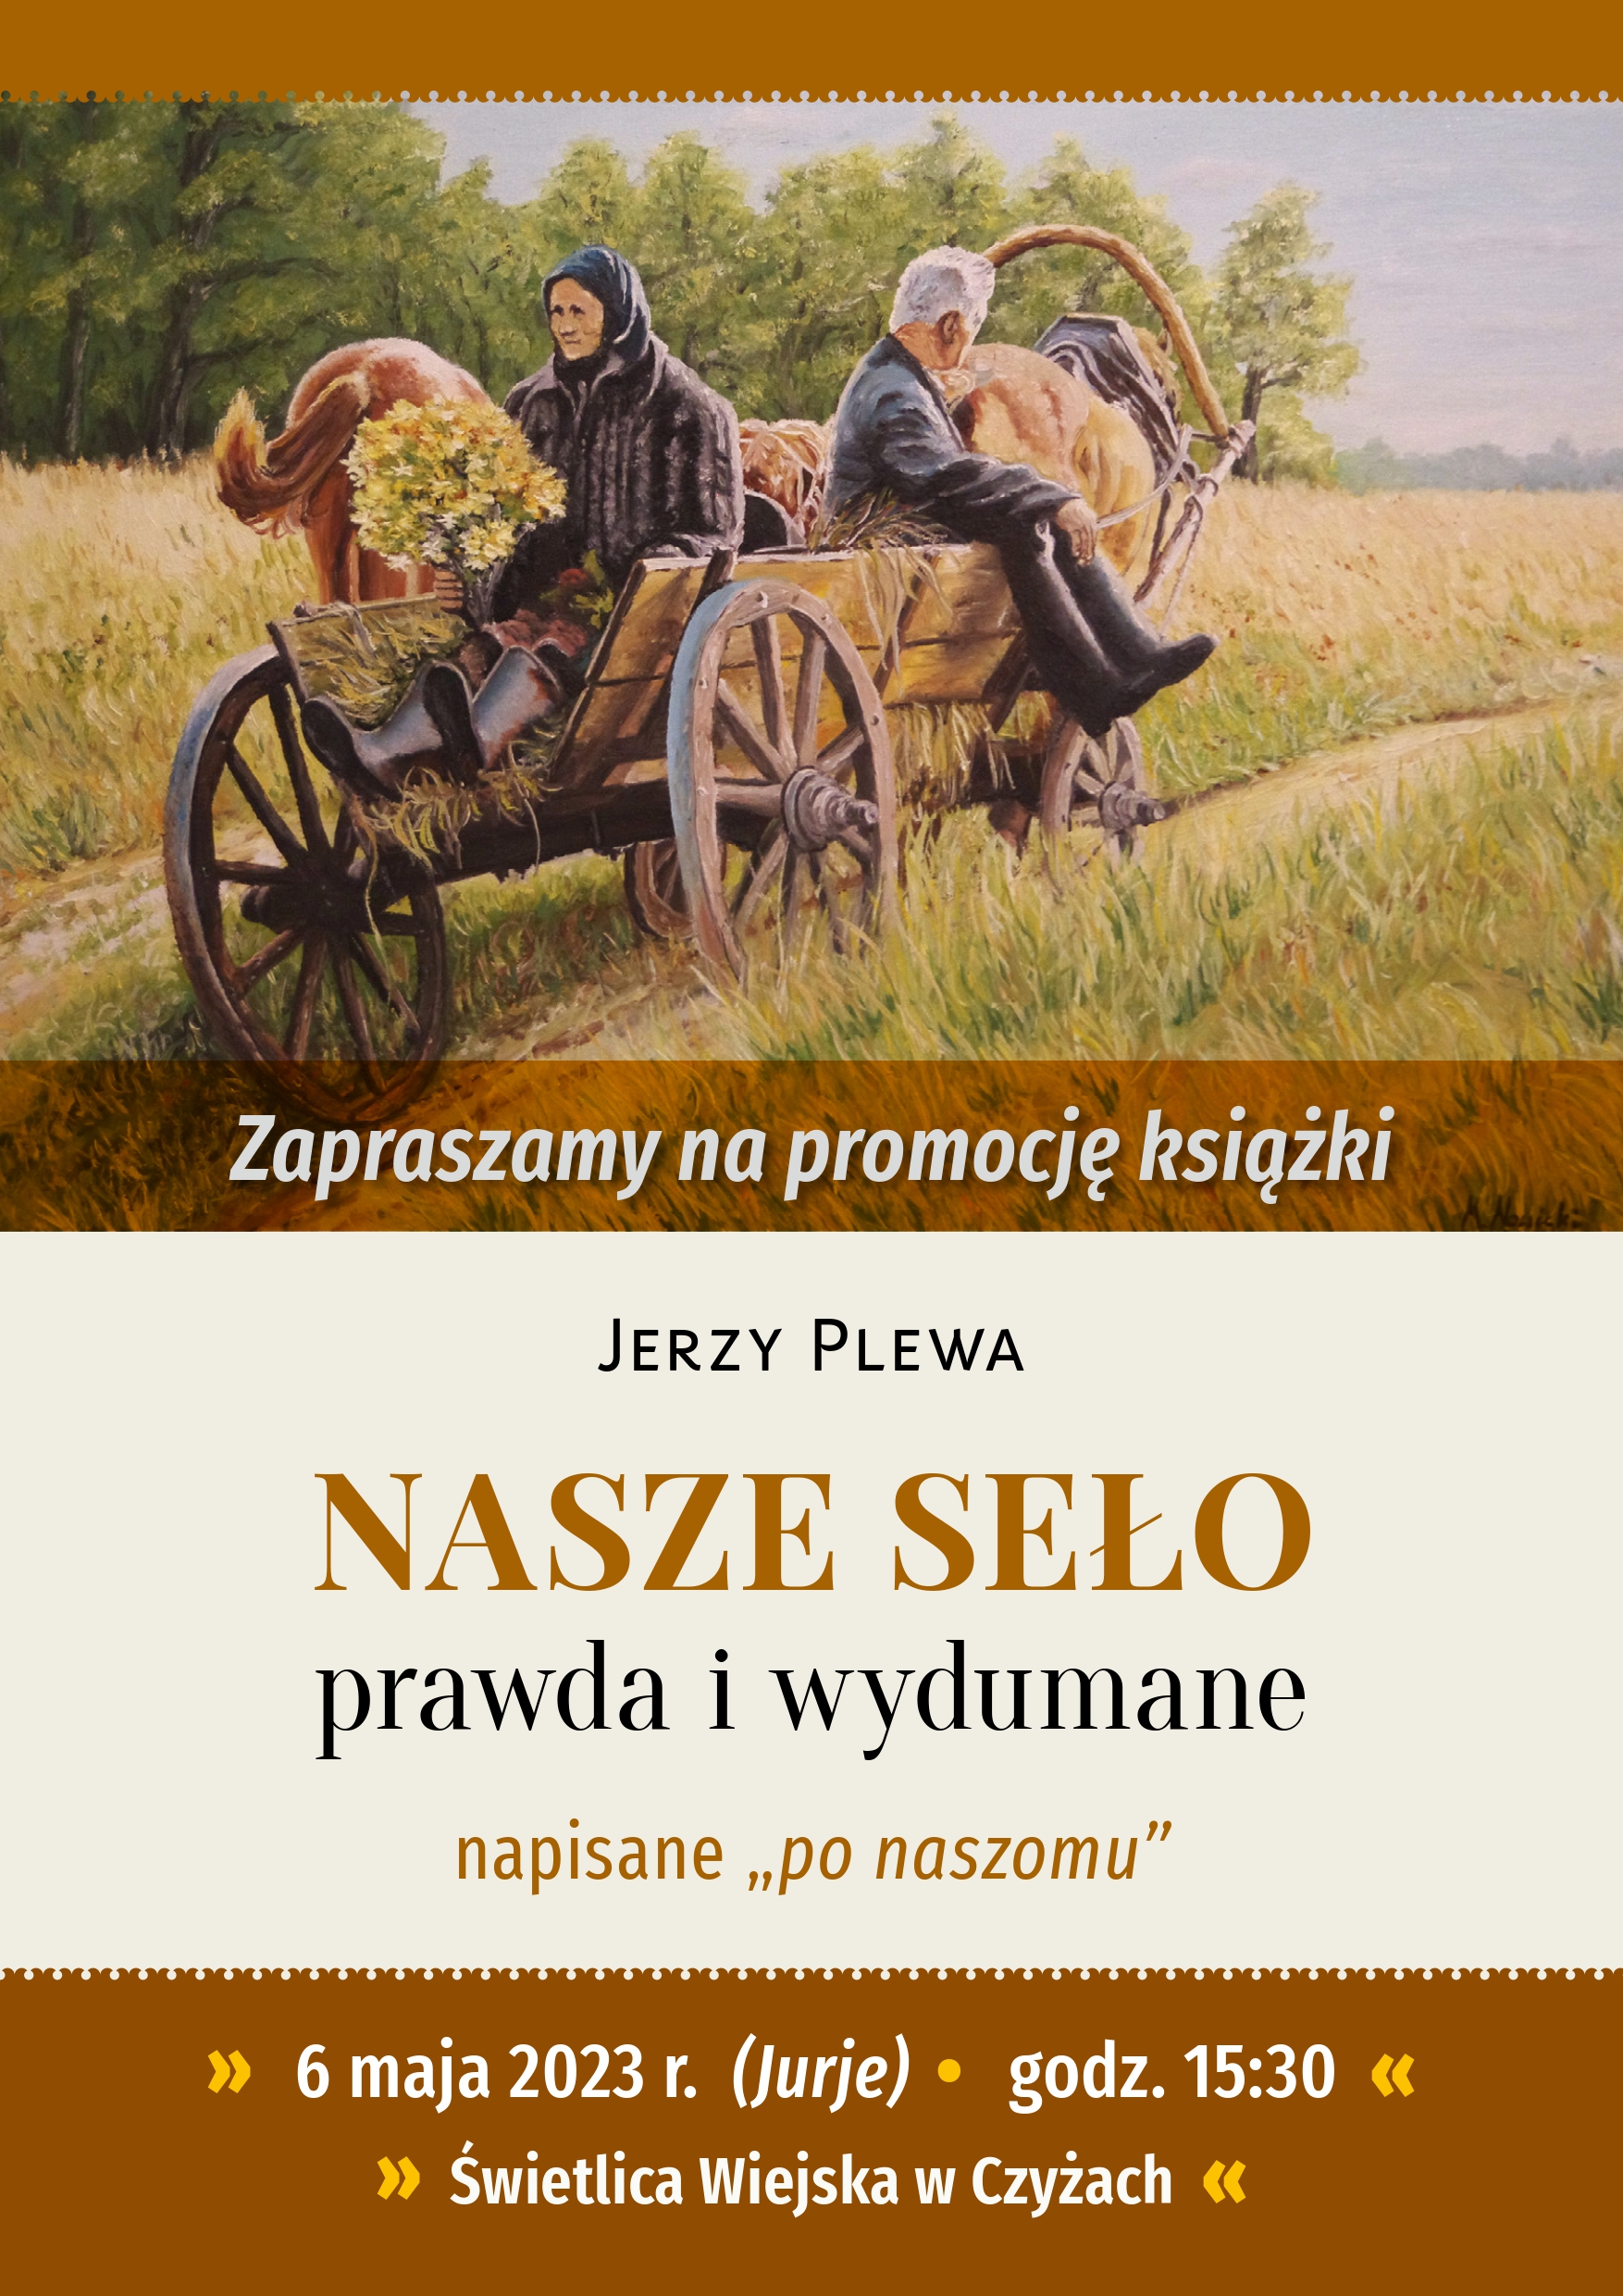 Promocja opowiadań Jerzego Plewy „Nasze seło, prawda i wydumane”